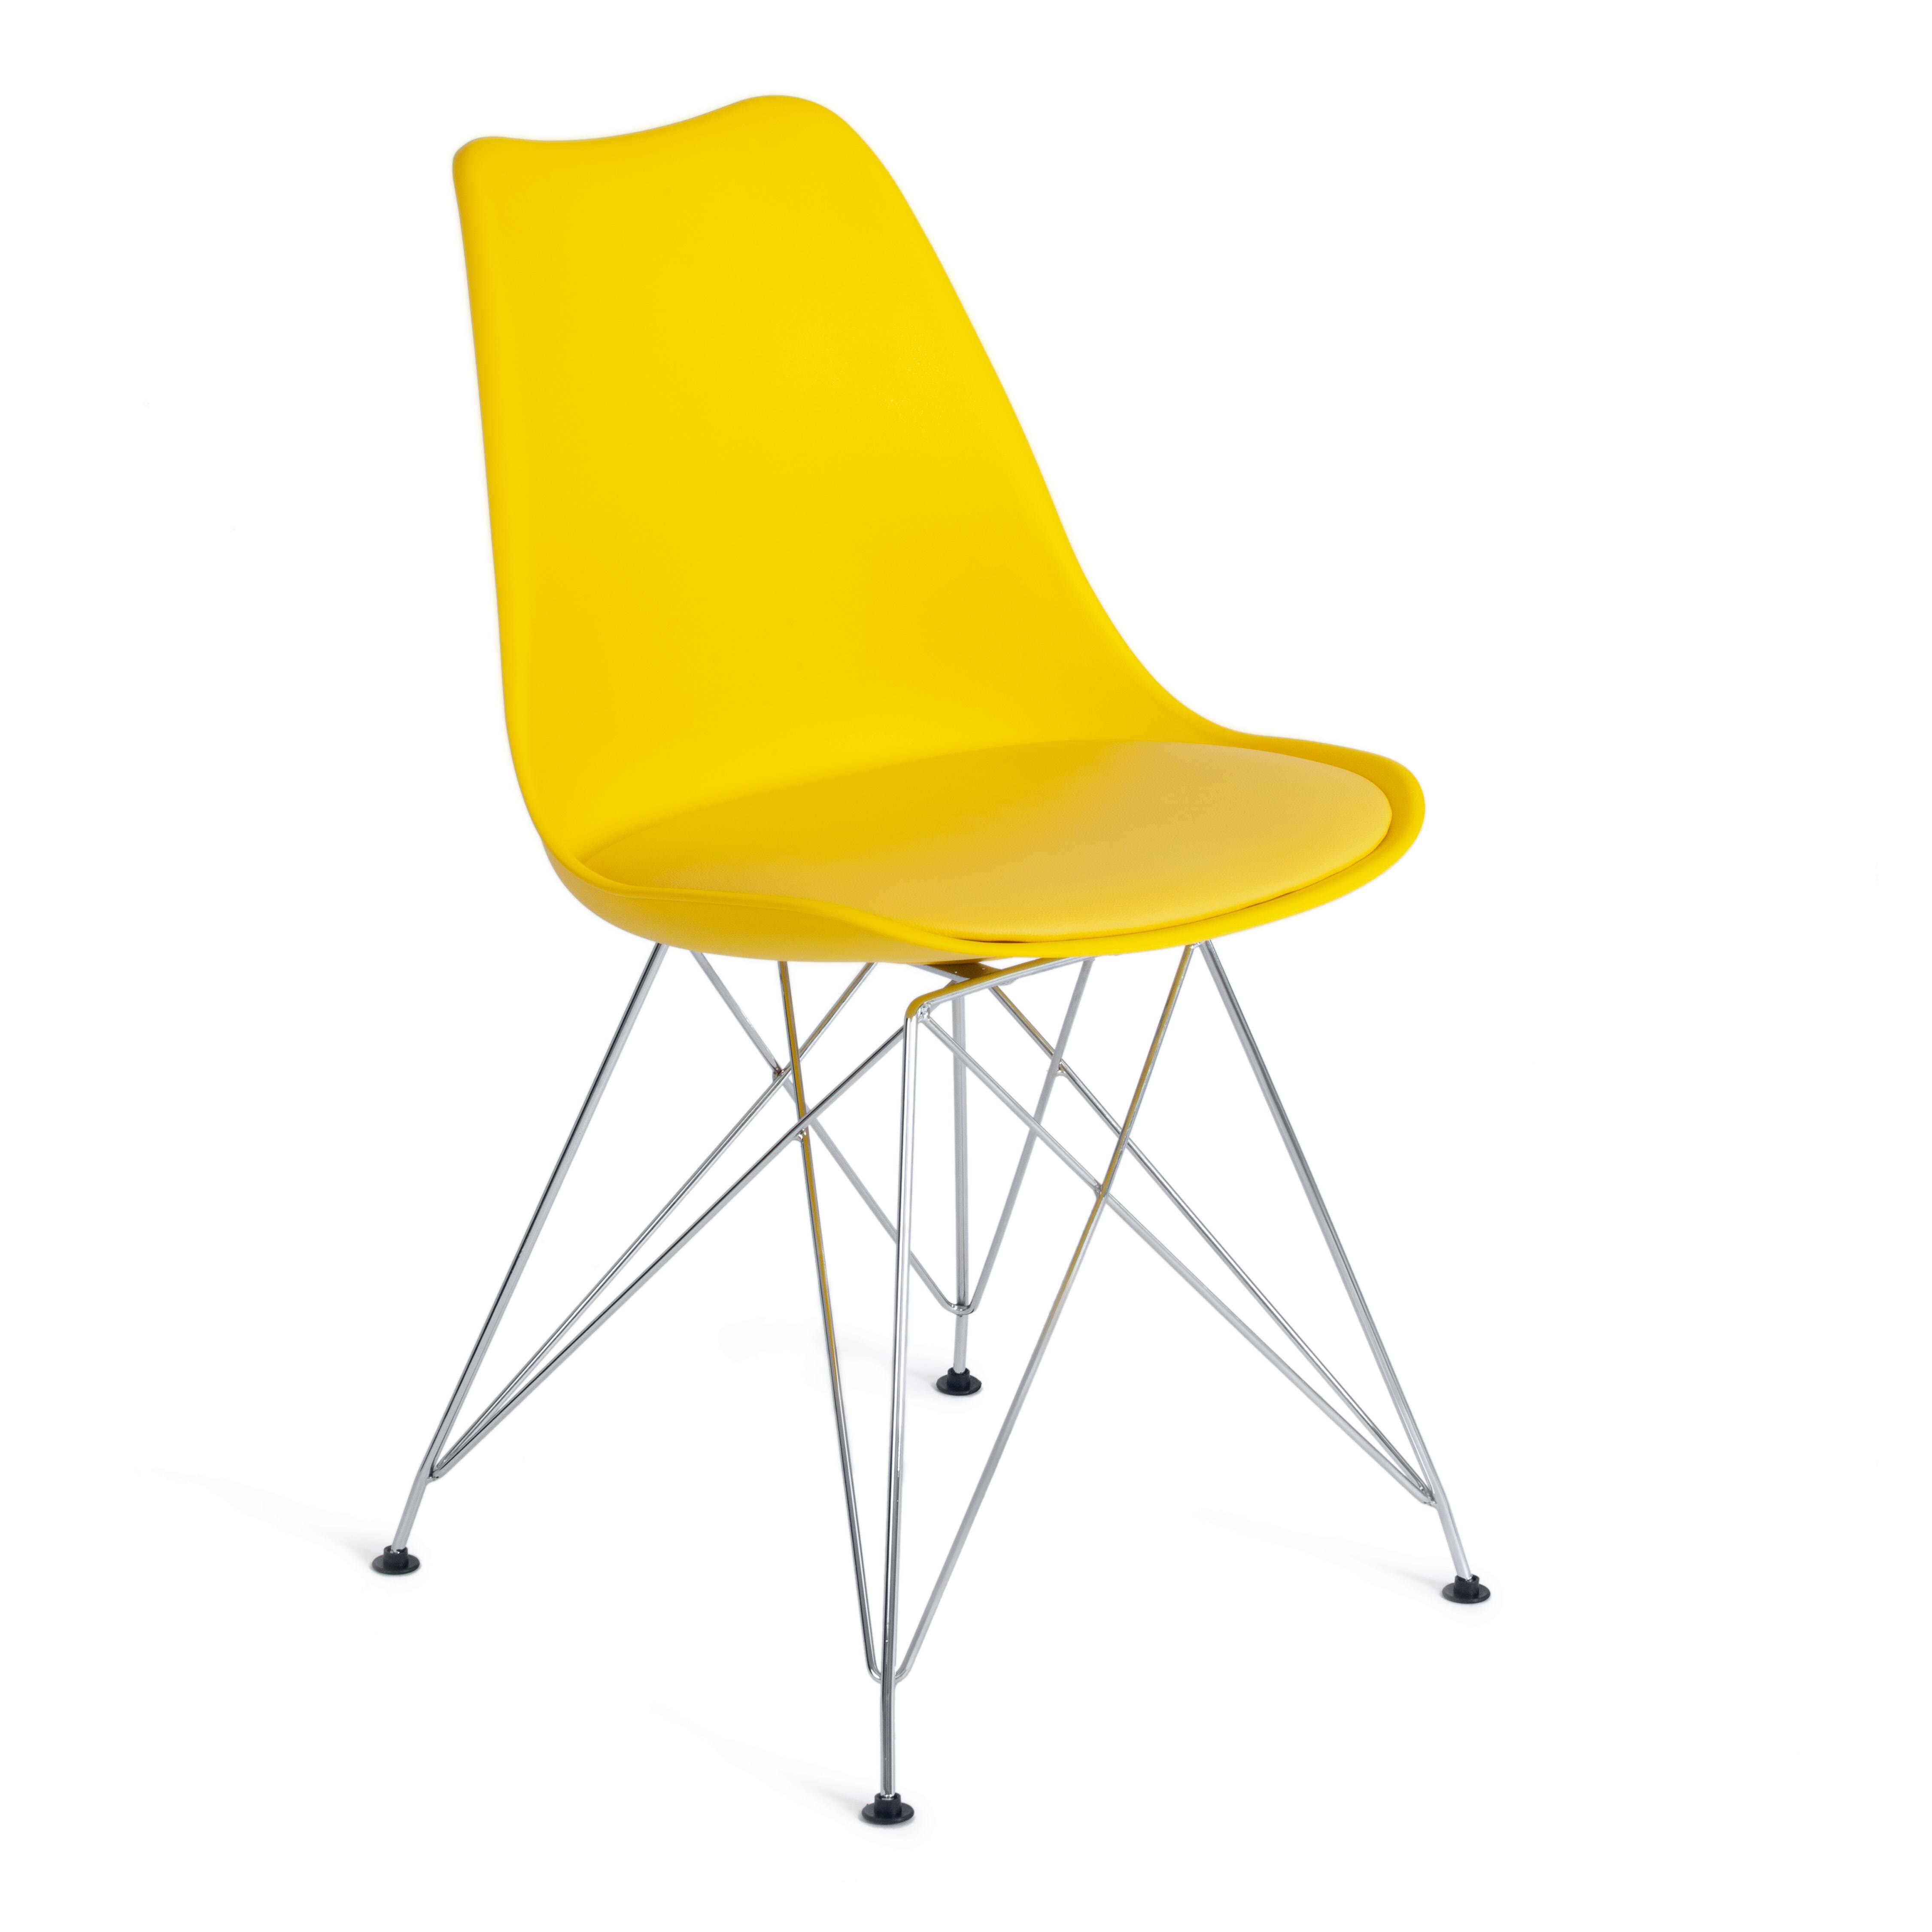 Стул пластиковый на металлических ножках желтый Tulip Iron Chair, 4 шт